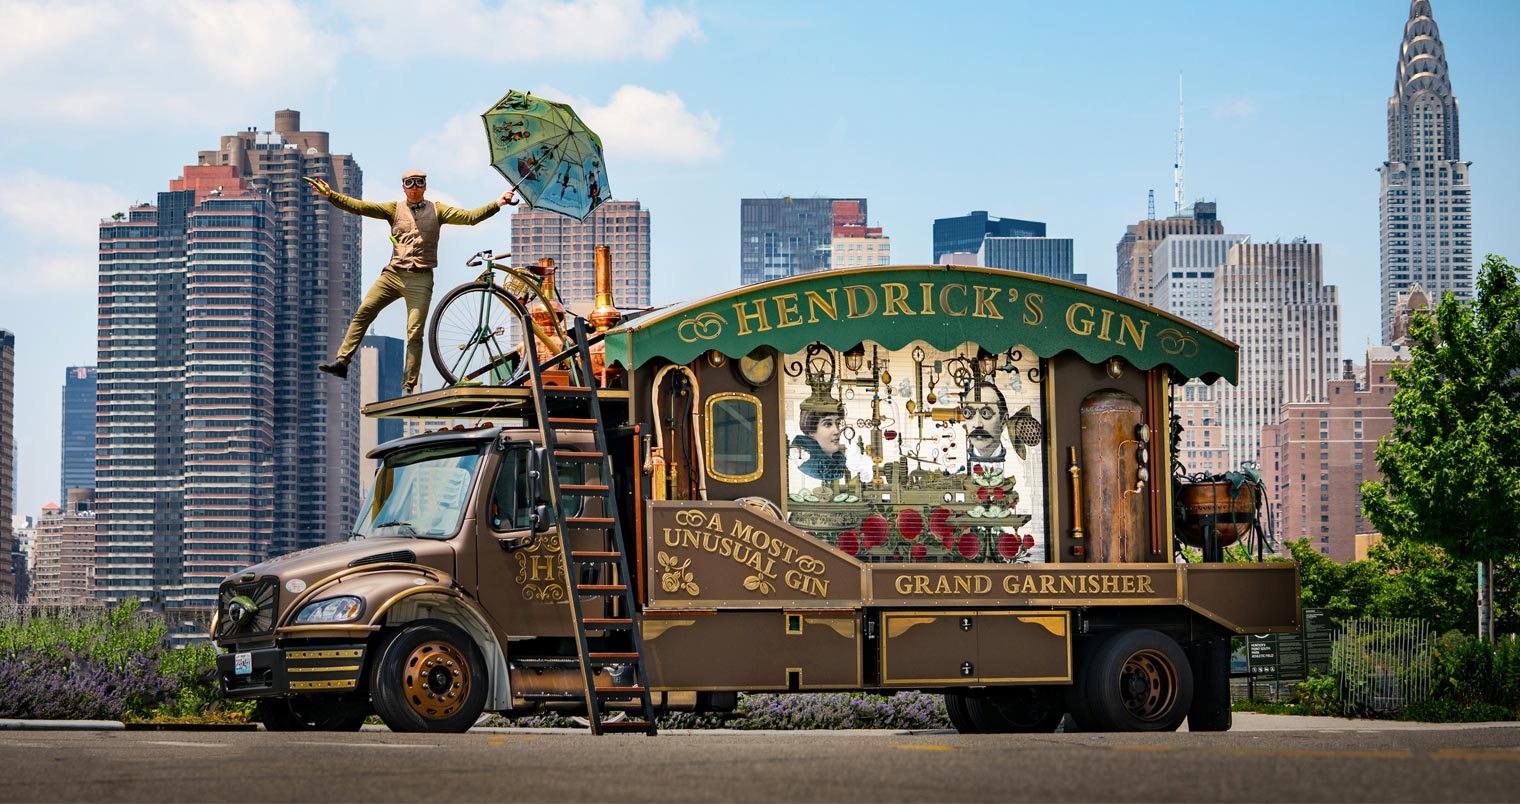 Hendricks-Gin-Giant-Cucumber-Garnisher.jpg?resize=1520,804